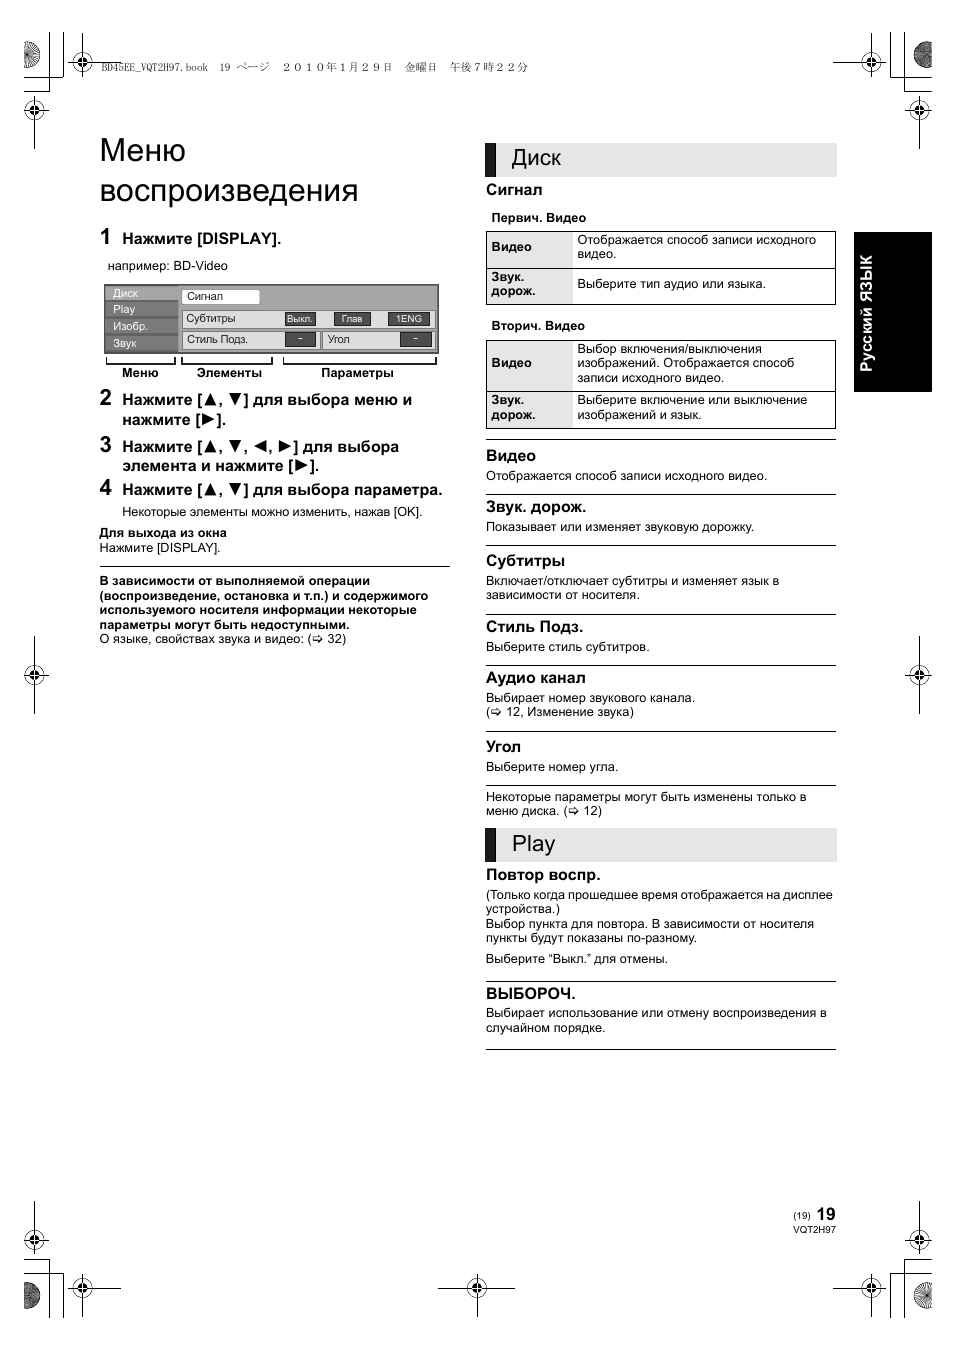 Меню воспроизведения, Диск, Play | Инструкция по эксплуатации Panasonic DMP-BD45 | Страница 19 / 72